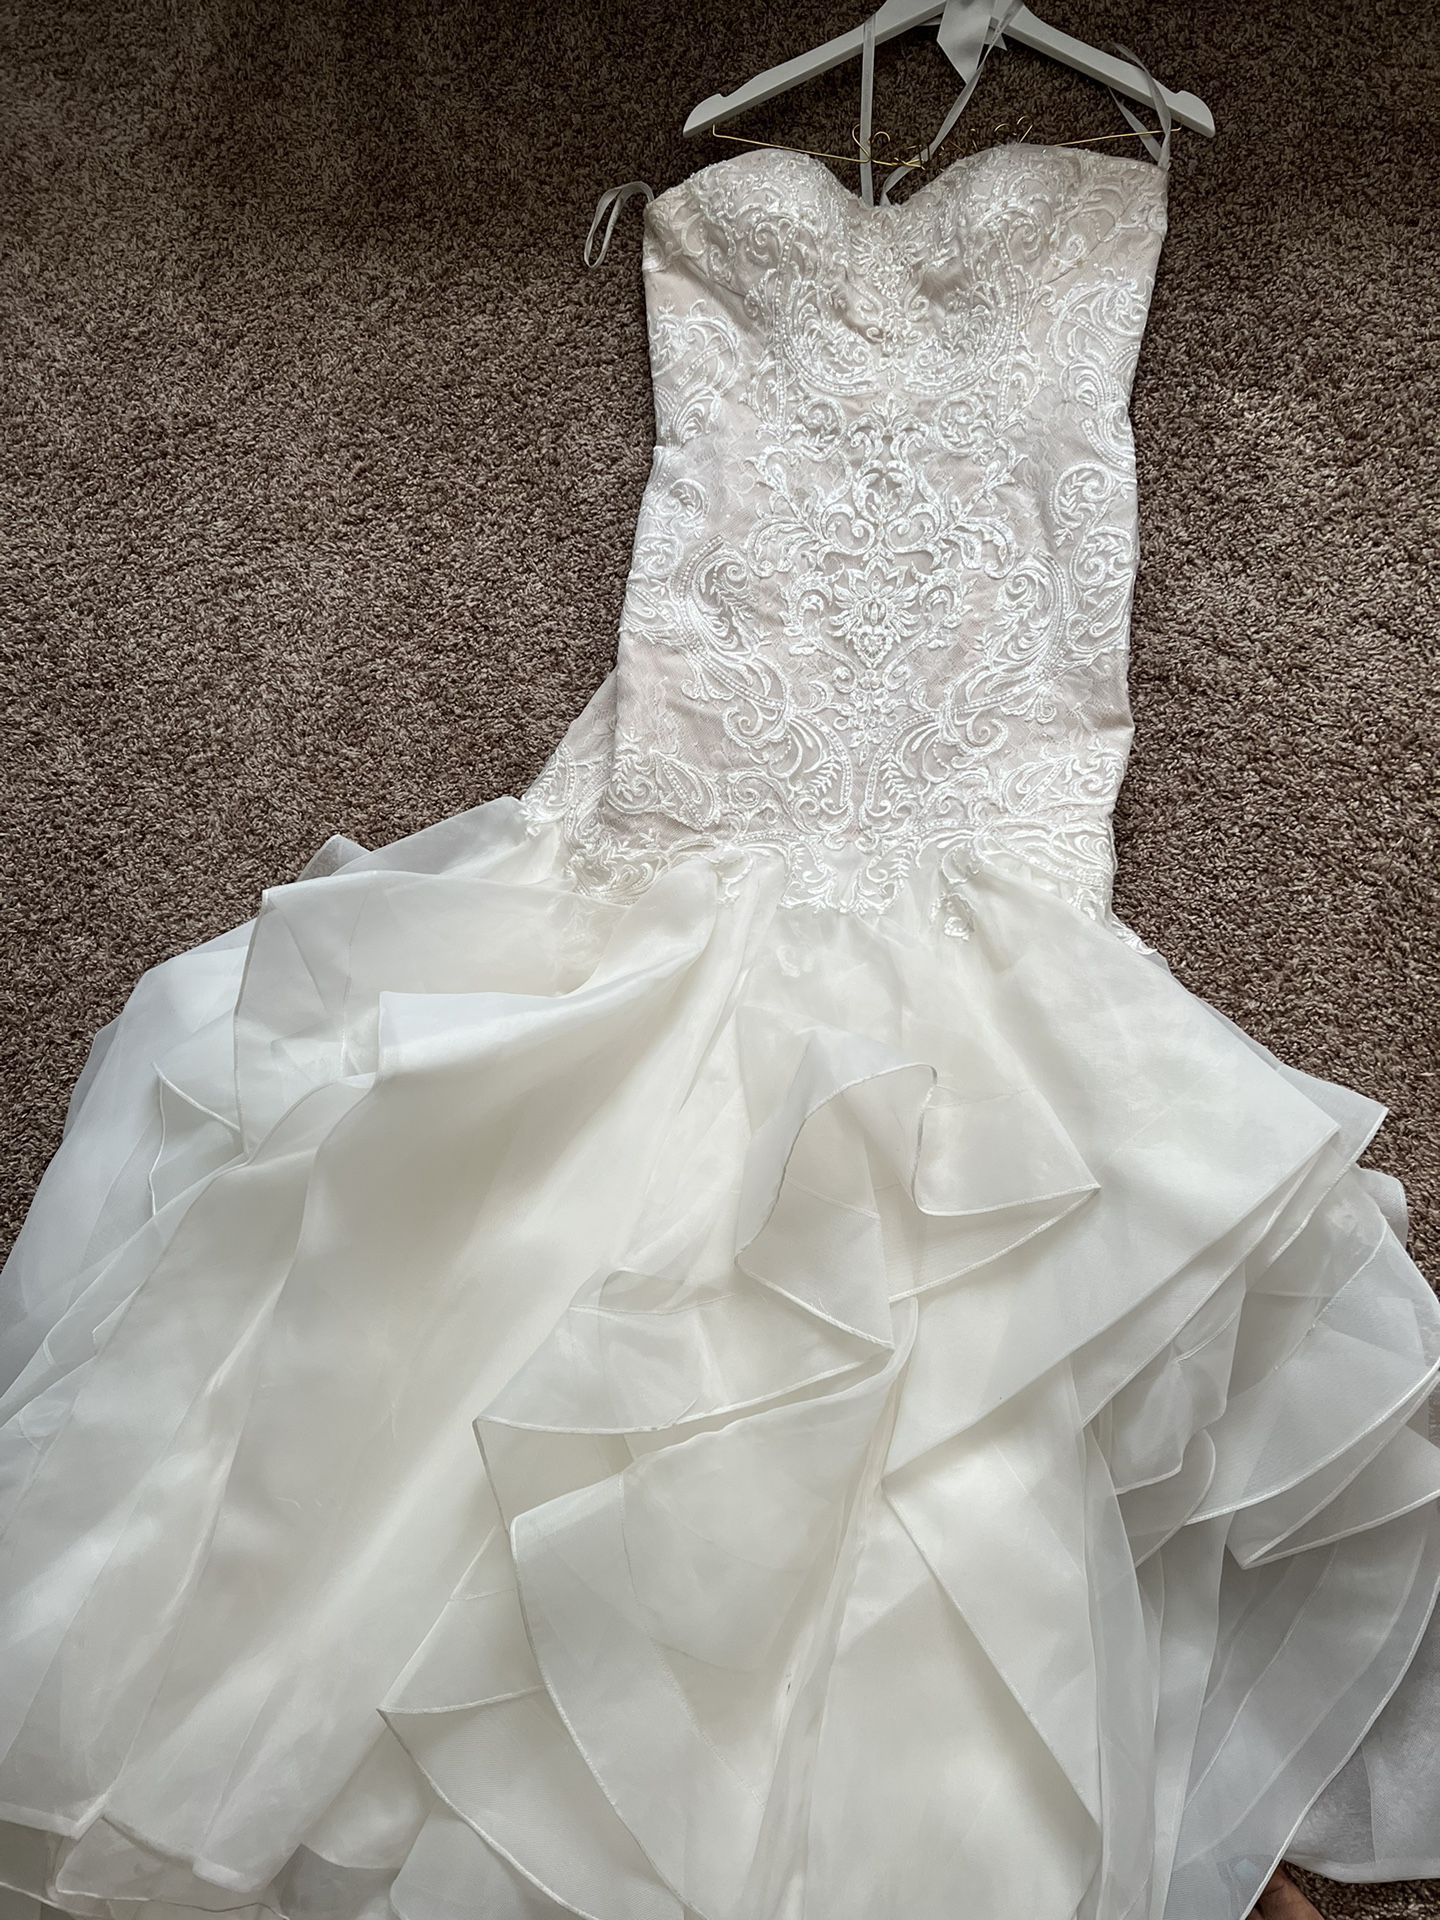 Wedding Dress Size 12 With Veil